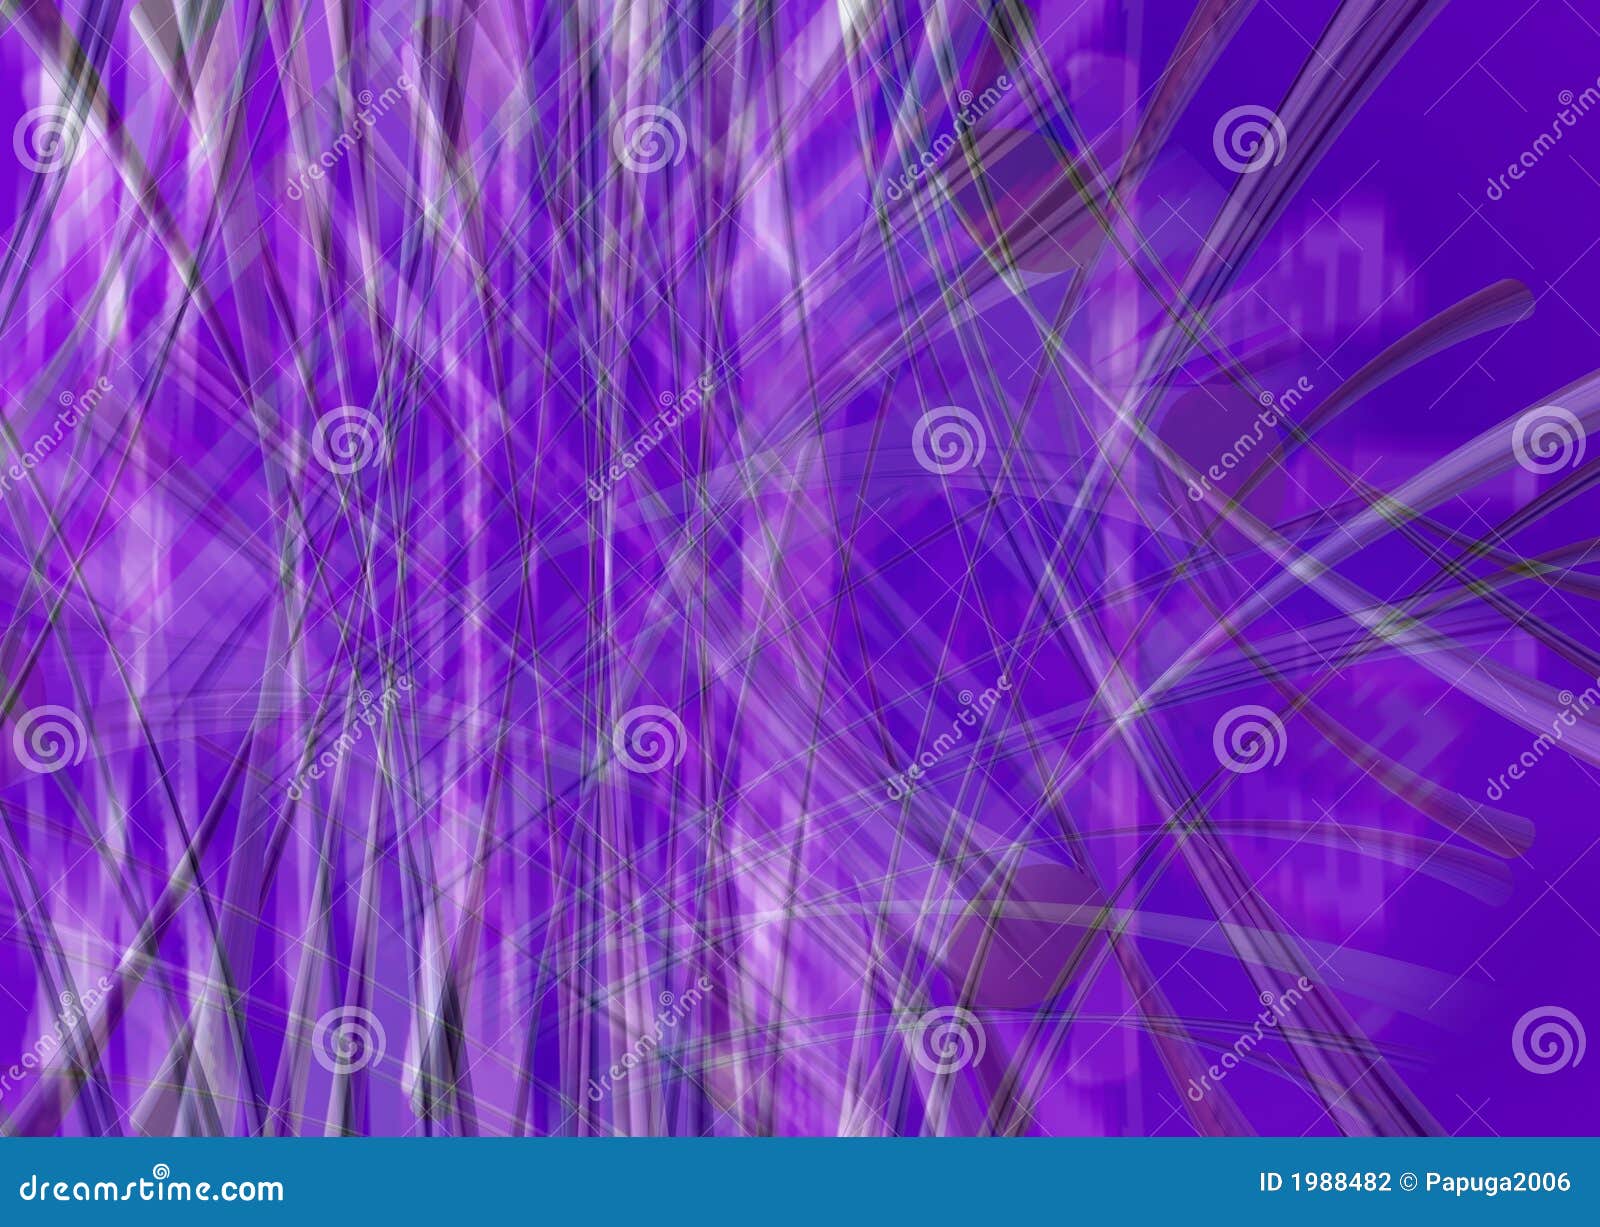 blue violet background